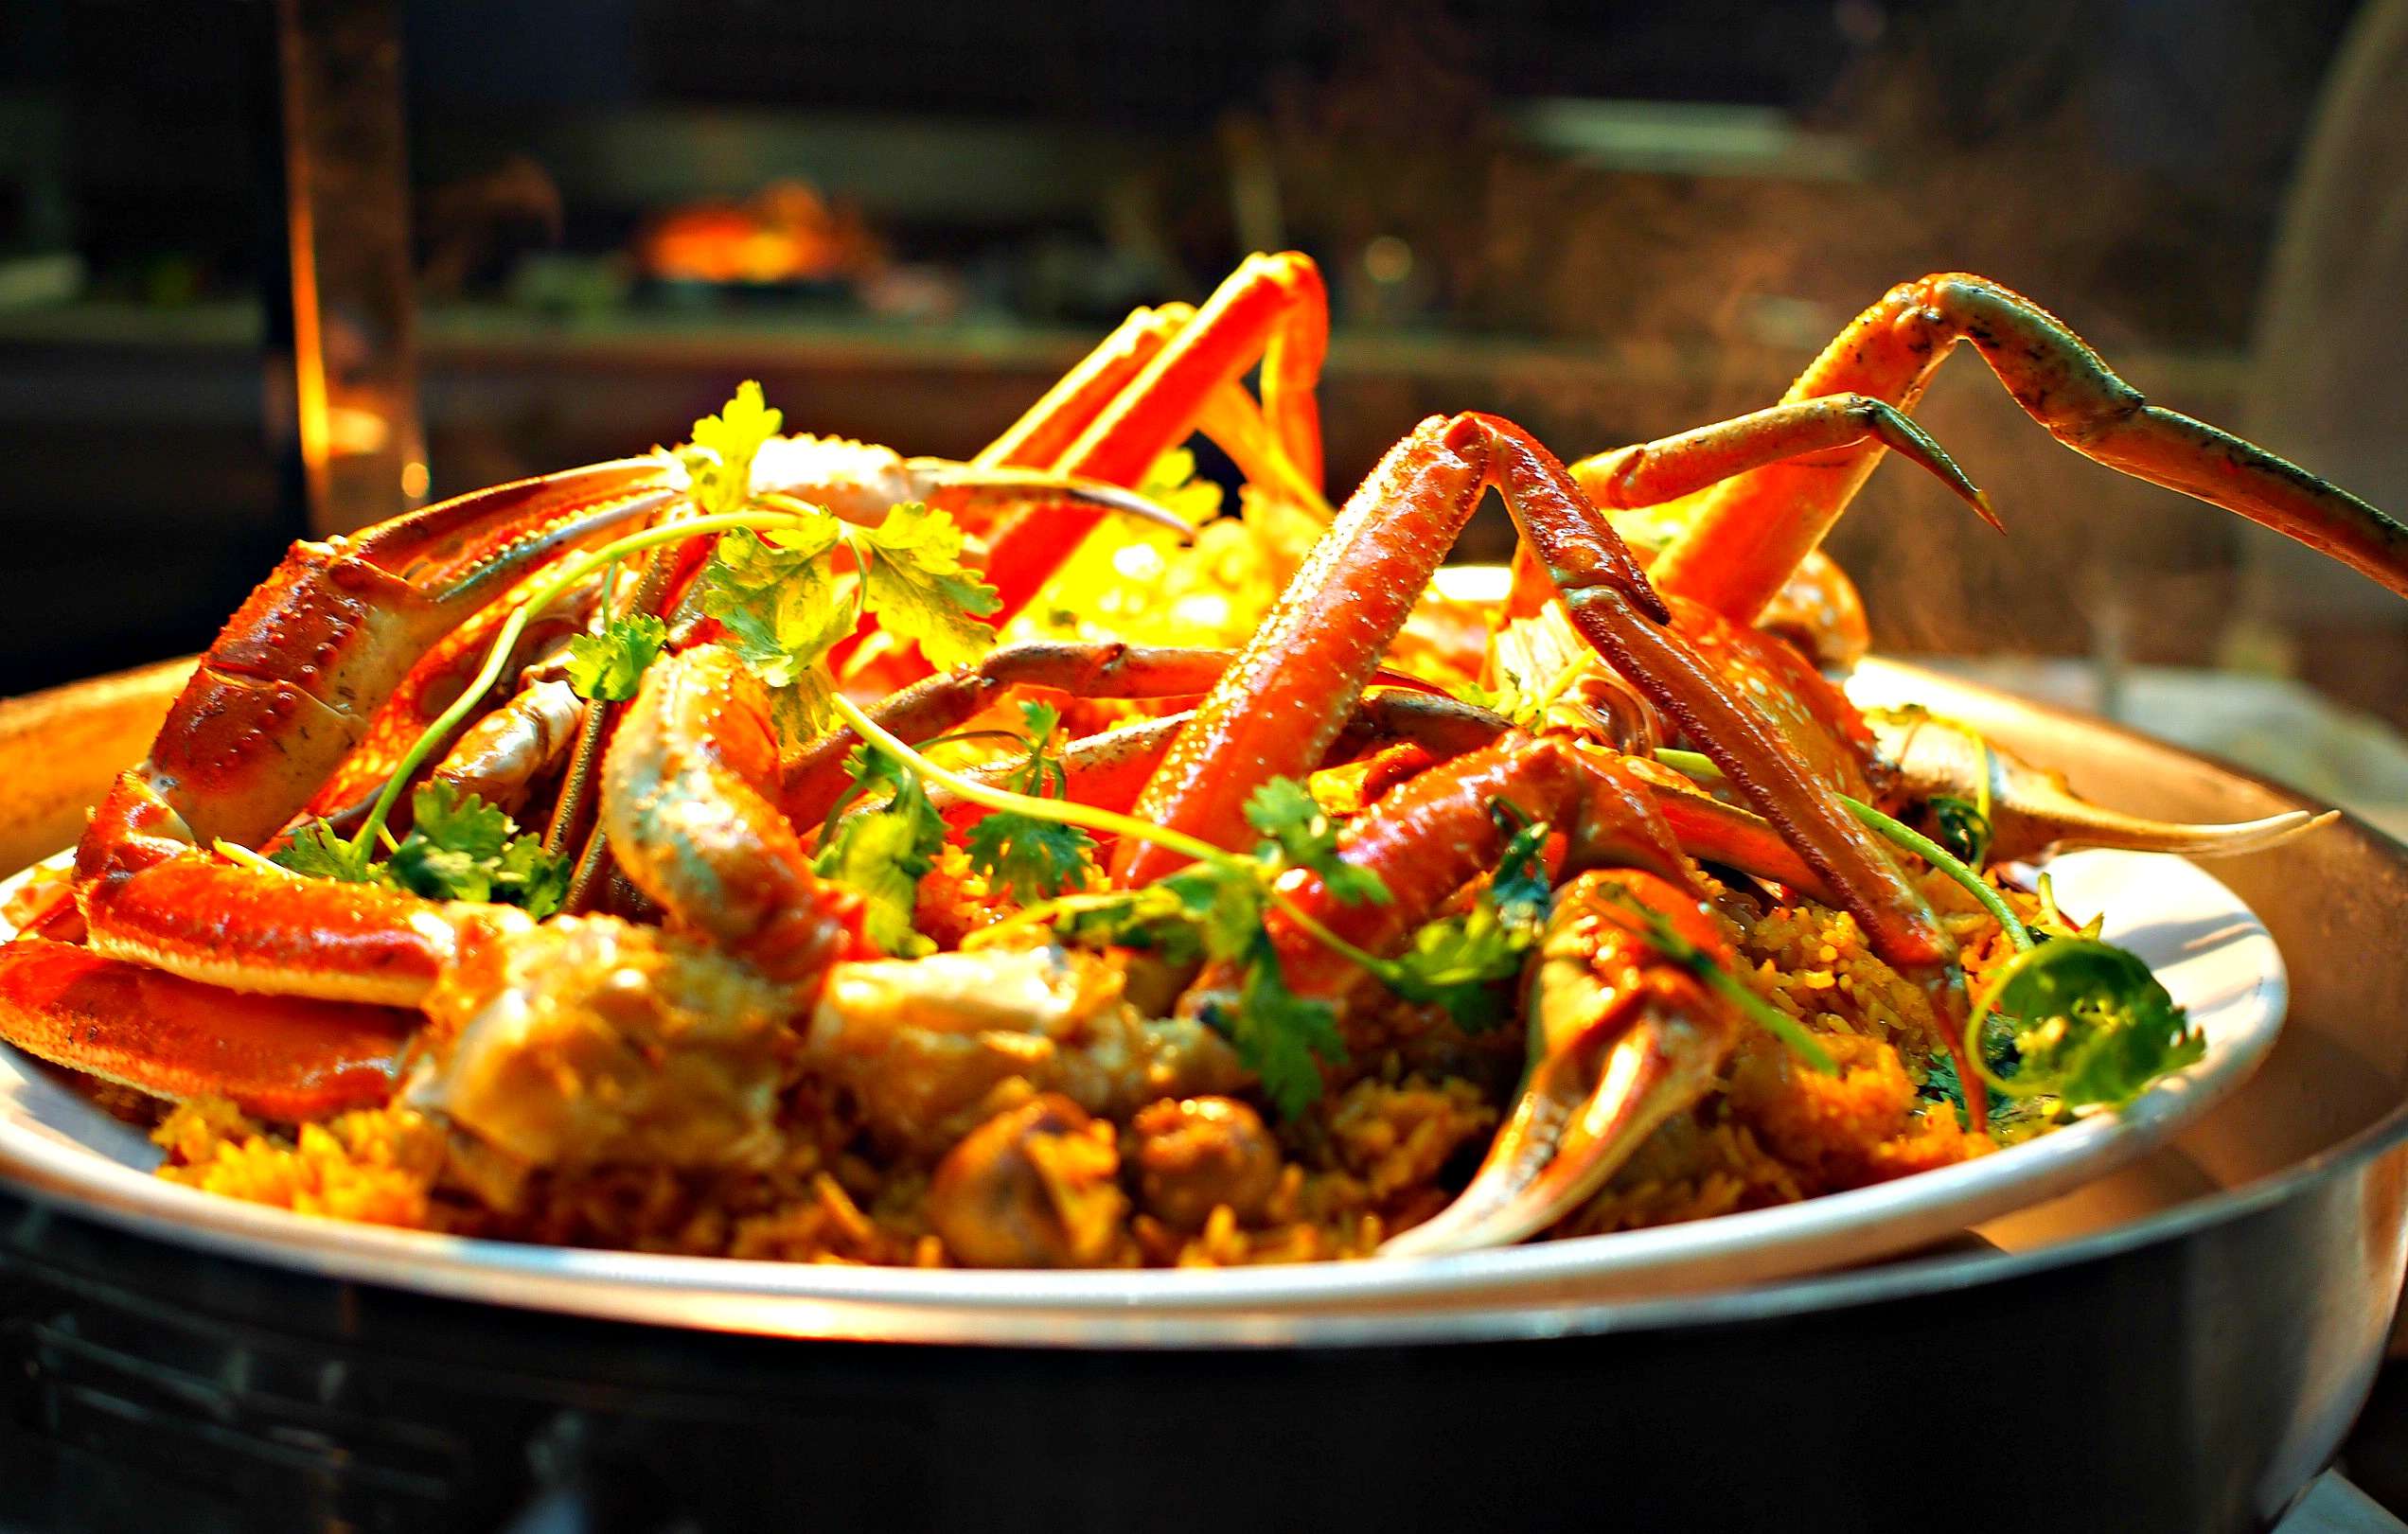 Crab in saffron rice